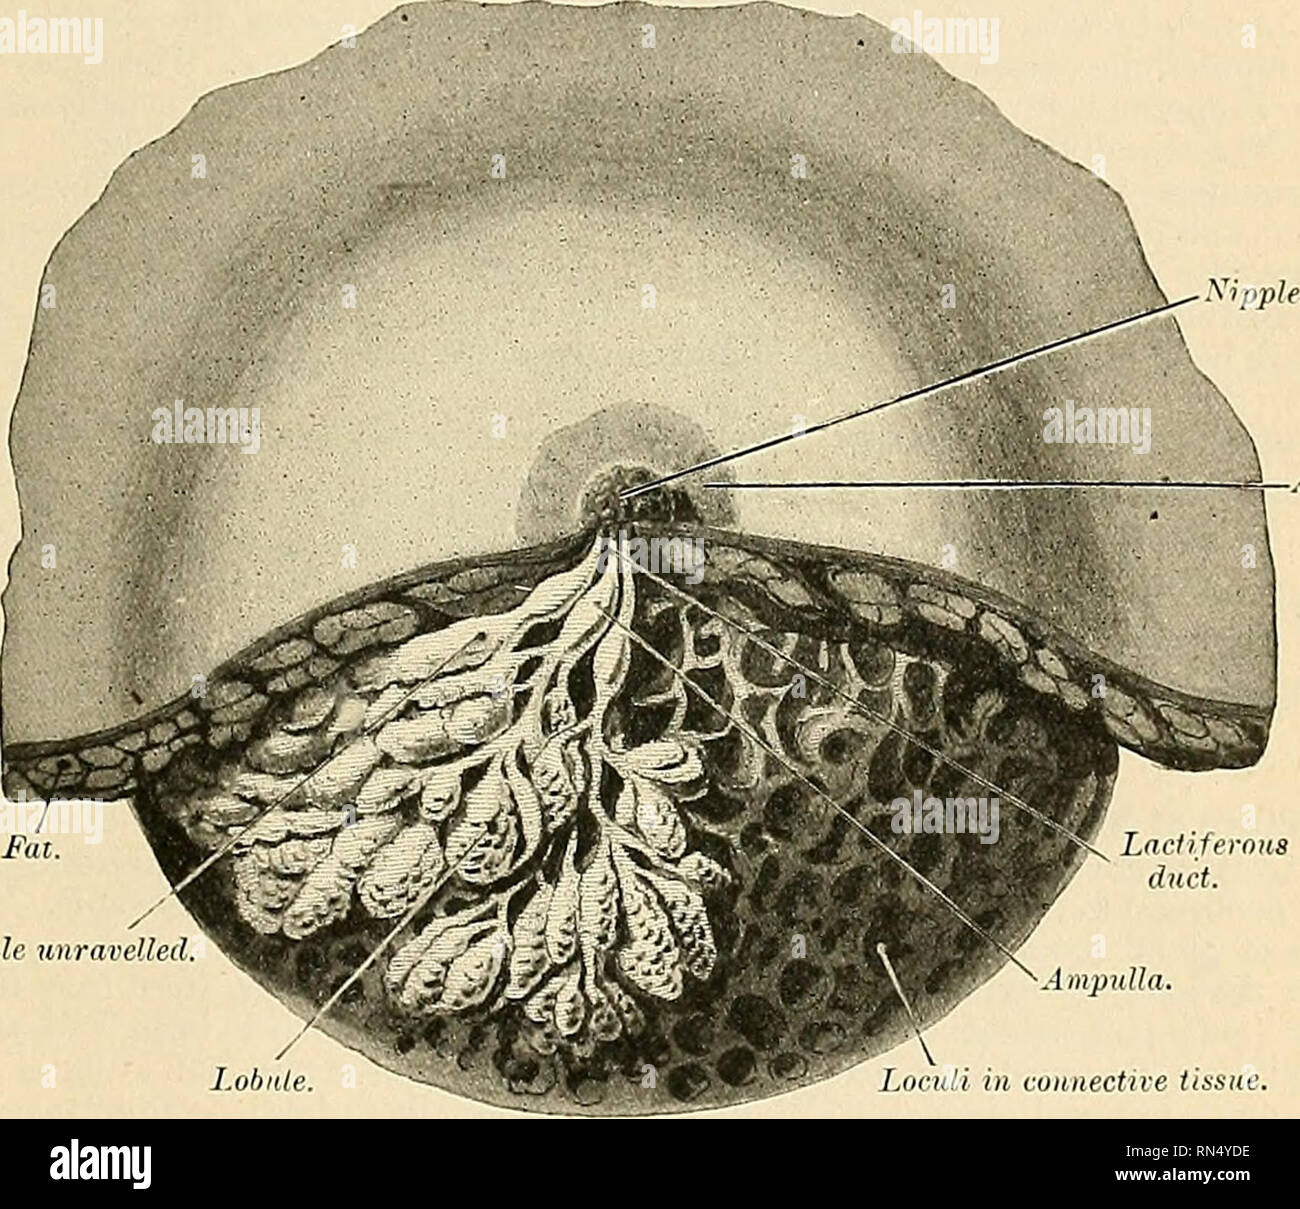 . Anatomie, descriptif et appliquée. L'anatomie. Le MAMAfARY GLAND 1429 mamelon est rendue par des fissures (Fig. 1207), il présente une dépression dans laquelle sont les ouvertures de la lactation (Fig. 1209), et sa circonférence est jeté dans les crêtes concentriques (Fig. 1209). Le mamelon est entouré par une zone plus sombre froissé, la circulaire de l'aréole (aréole, seins) (Fig. 1207 et 1208), qui contient des glandes de sueur et sur lequel sont douze ou quinze petites élévations arrondies. Ces ele'ations sont causés par des glandes sébacées qui structure dans une transition entre glandes sébacées et mammaires Banque D'Images